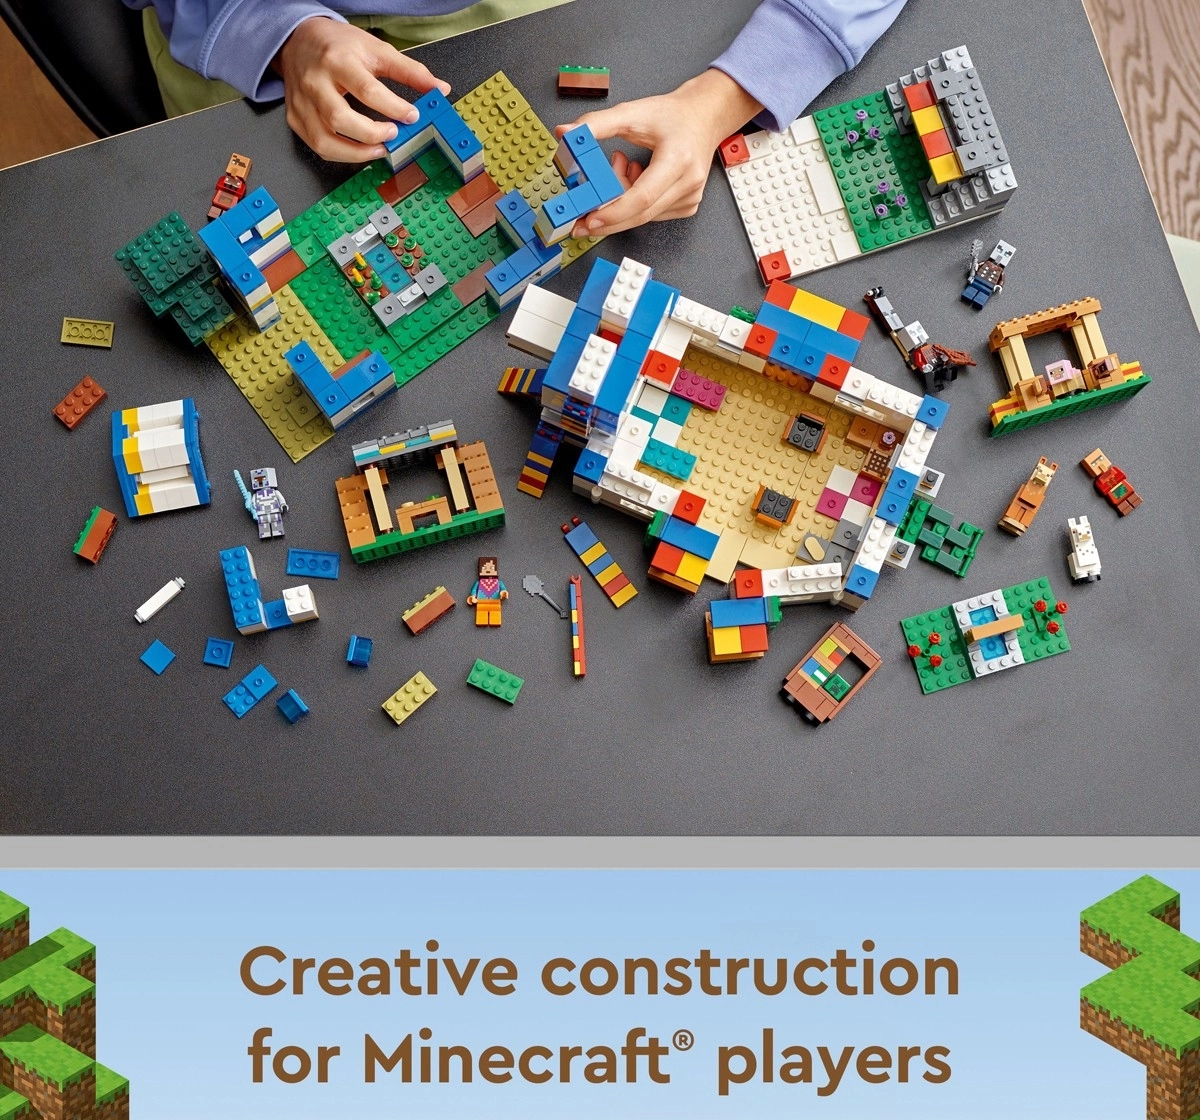 LEGO Minecraft The Llama Village 21188 Building Kit 1,252 Pieces Multicolour 9Y+